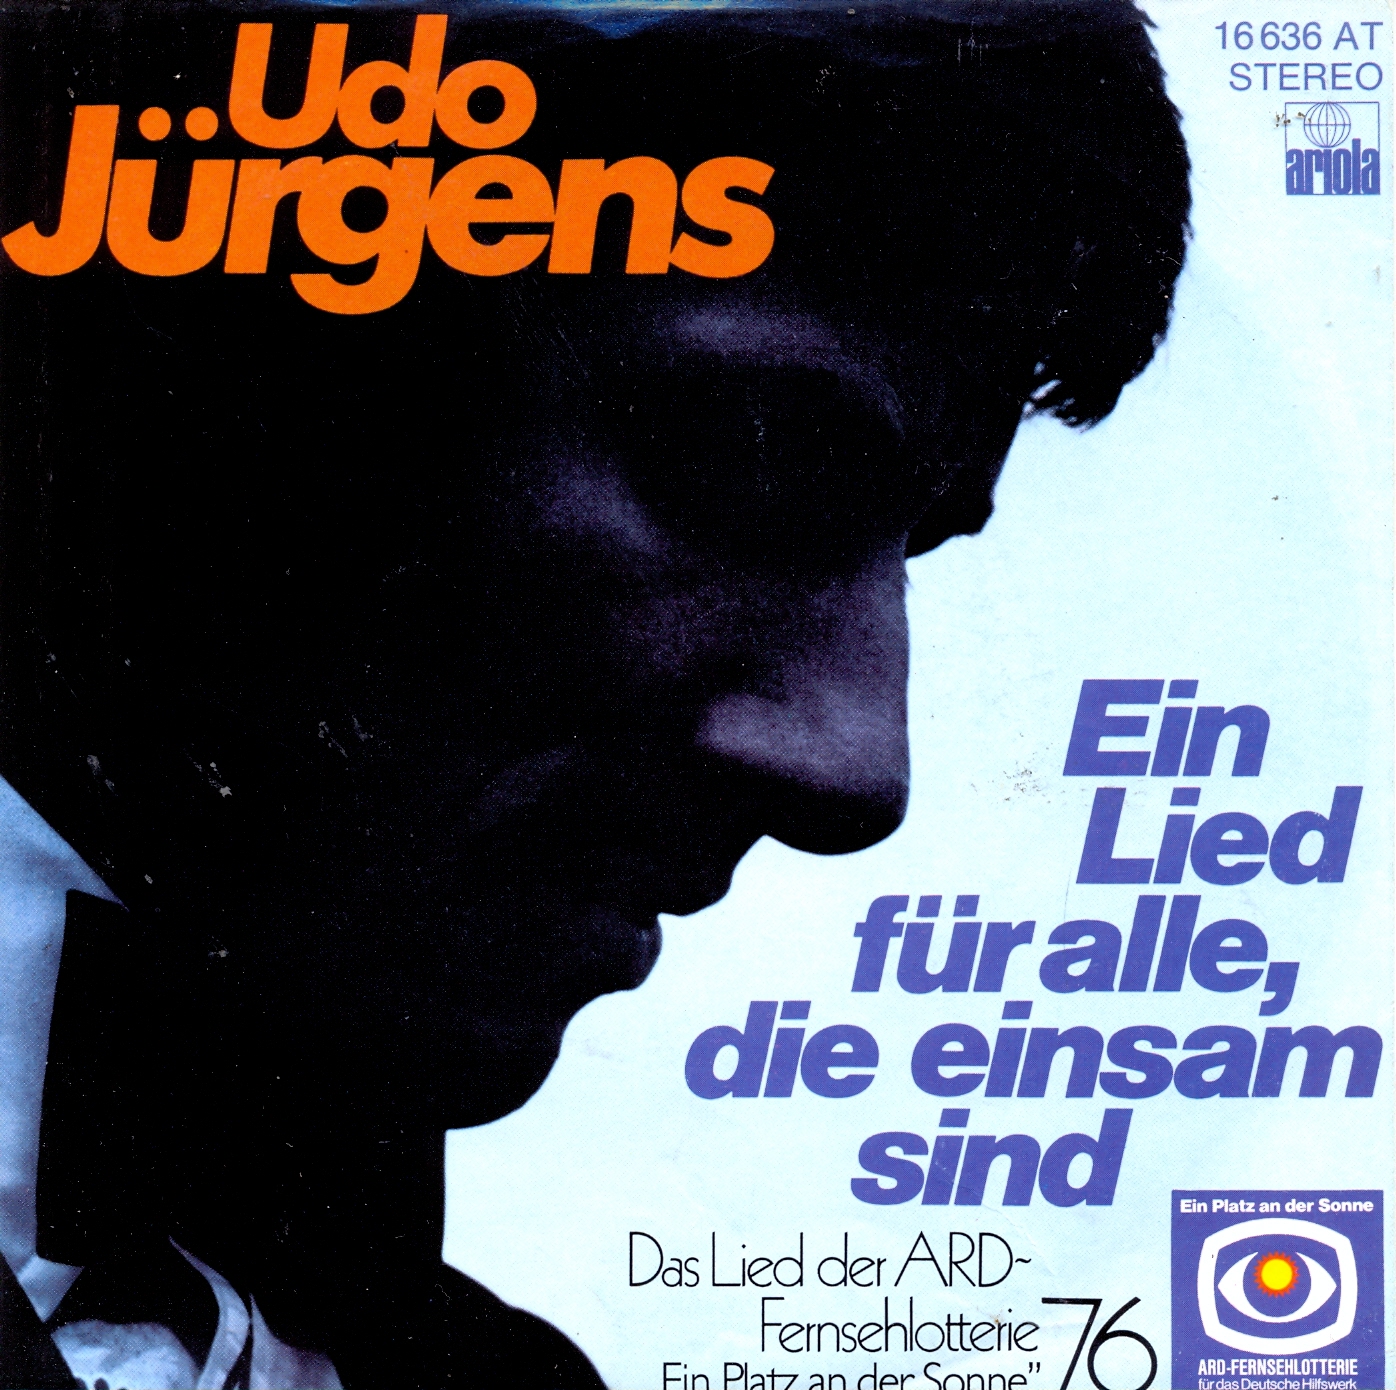 Jürgens Udo - Ein Lied für alle, die einsam sind